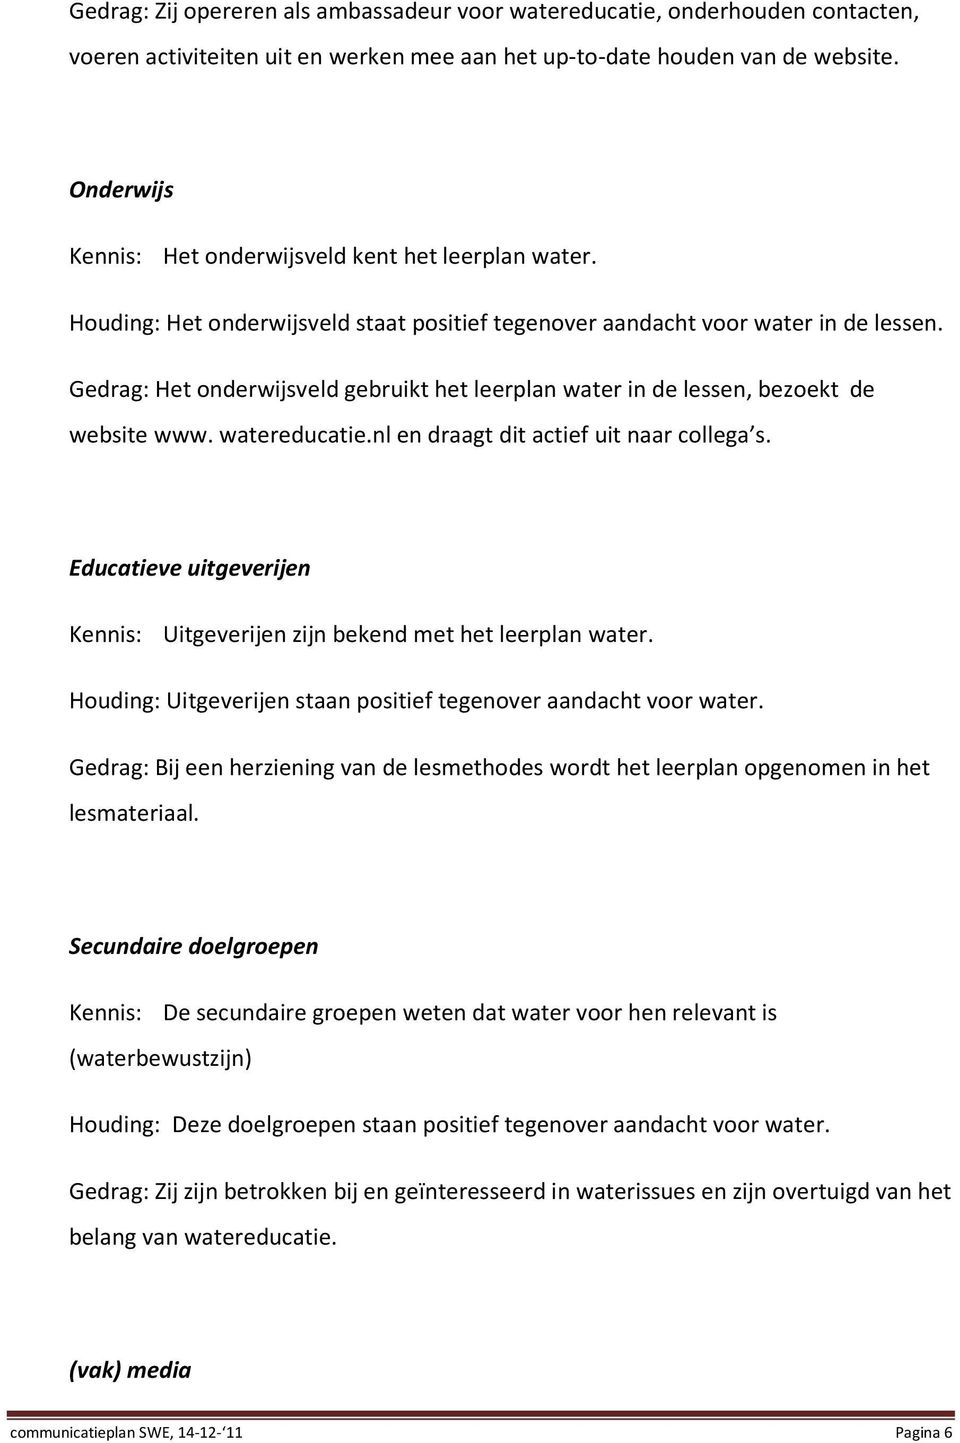 Gedrag: Het onderwijsveld gebruikt het leerplan water in de lessen, bezoekt de website www. watereducatie.nl en draagt dit actief uit naar collega s.